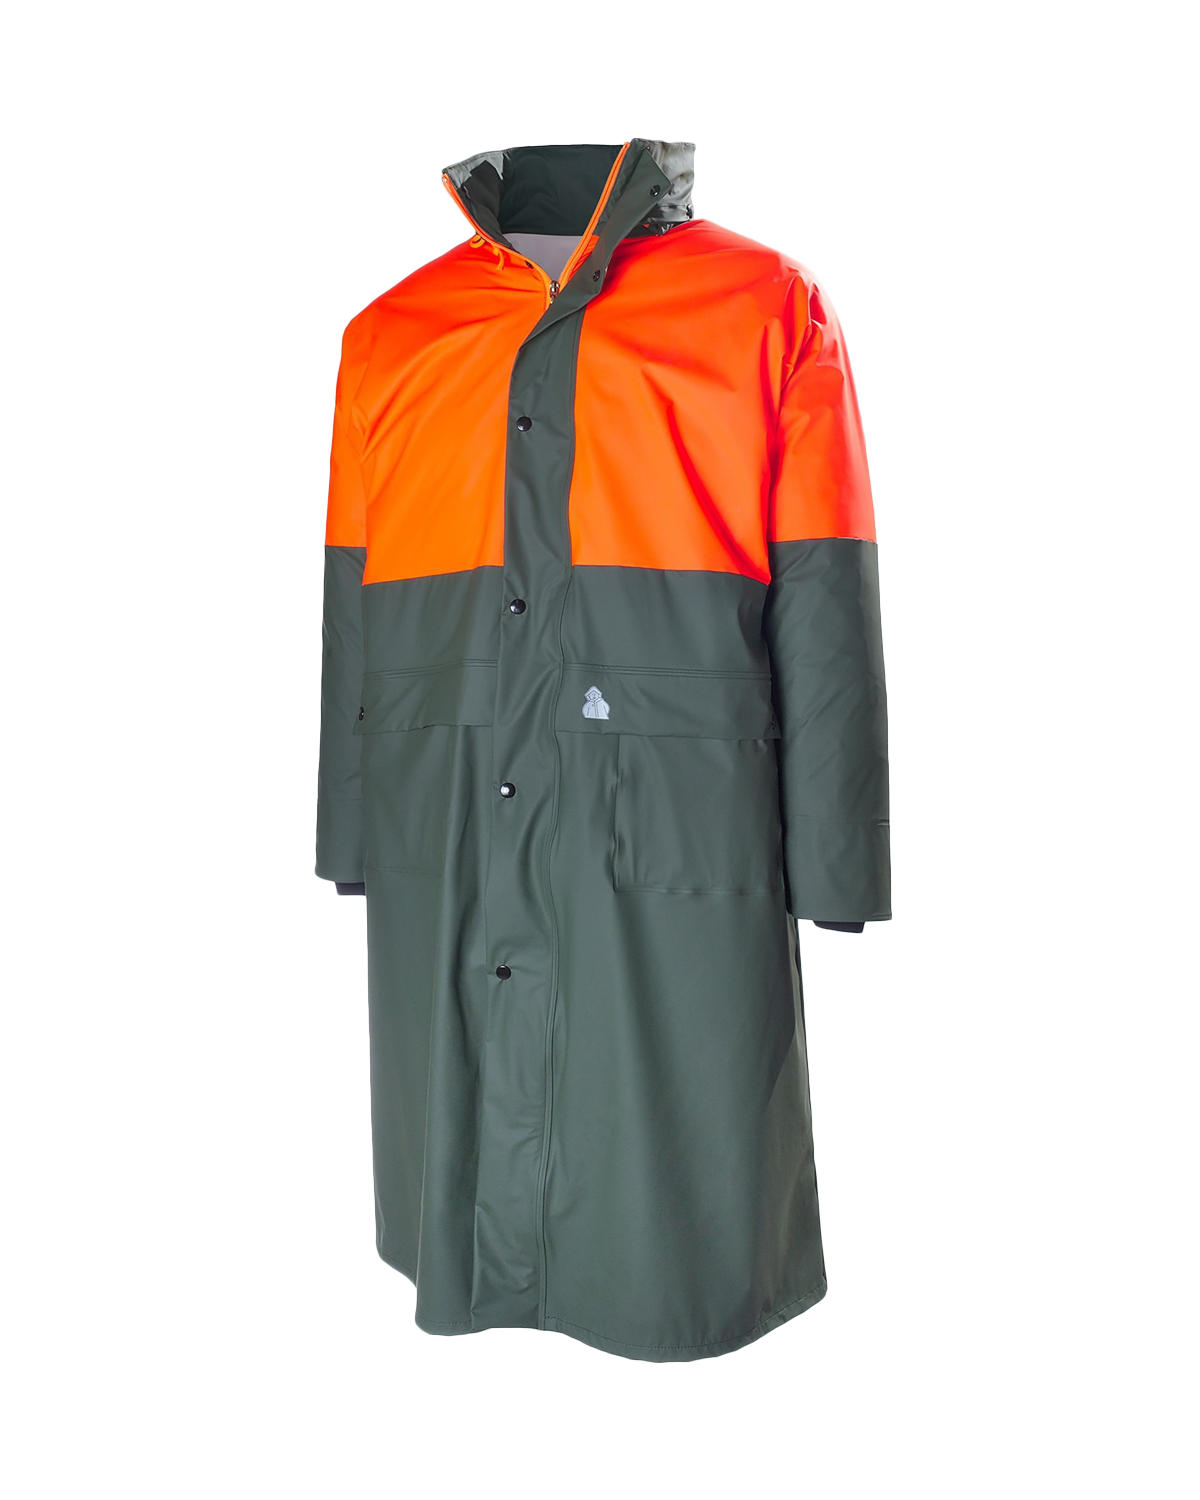 Two-tone Hunting Raincoat